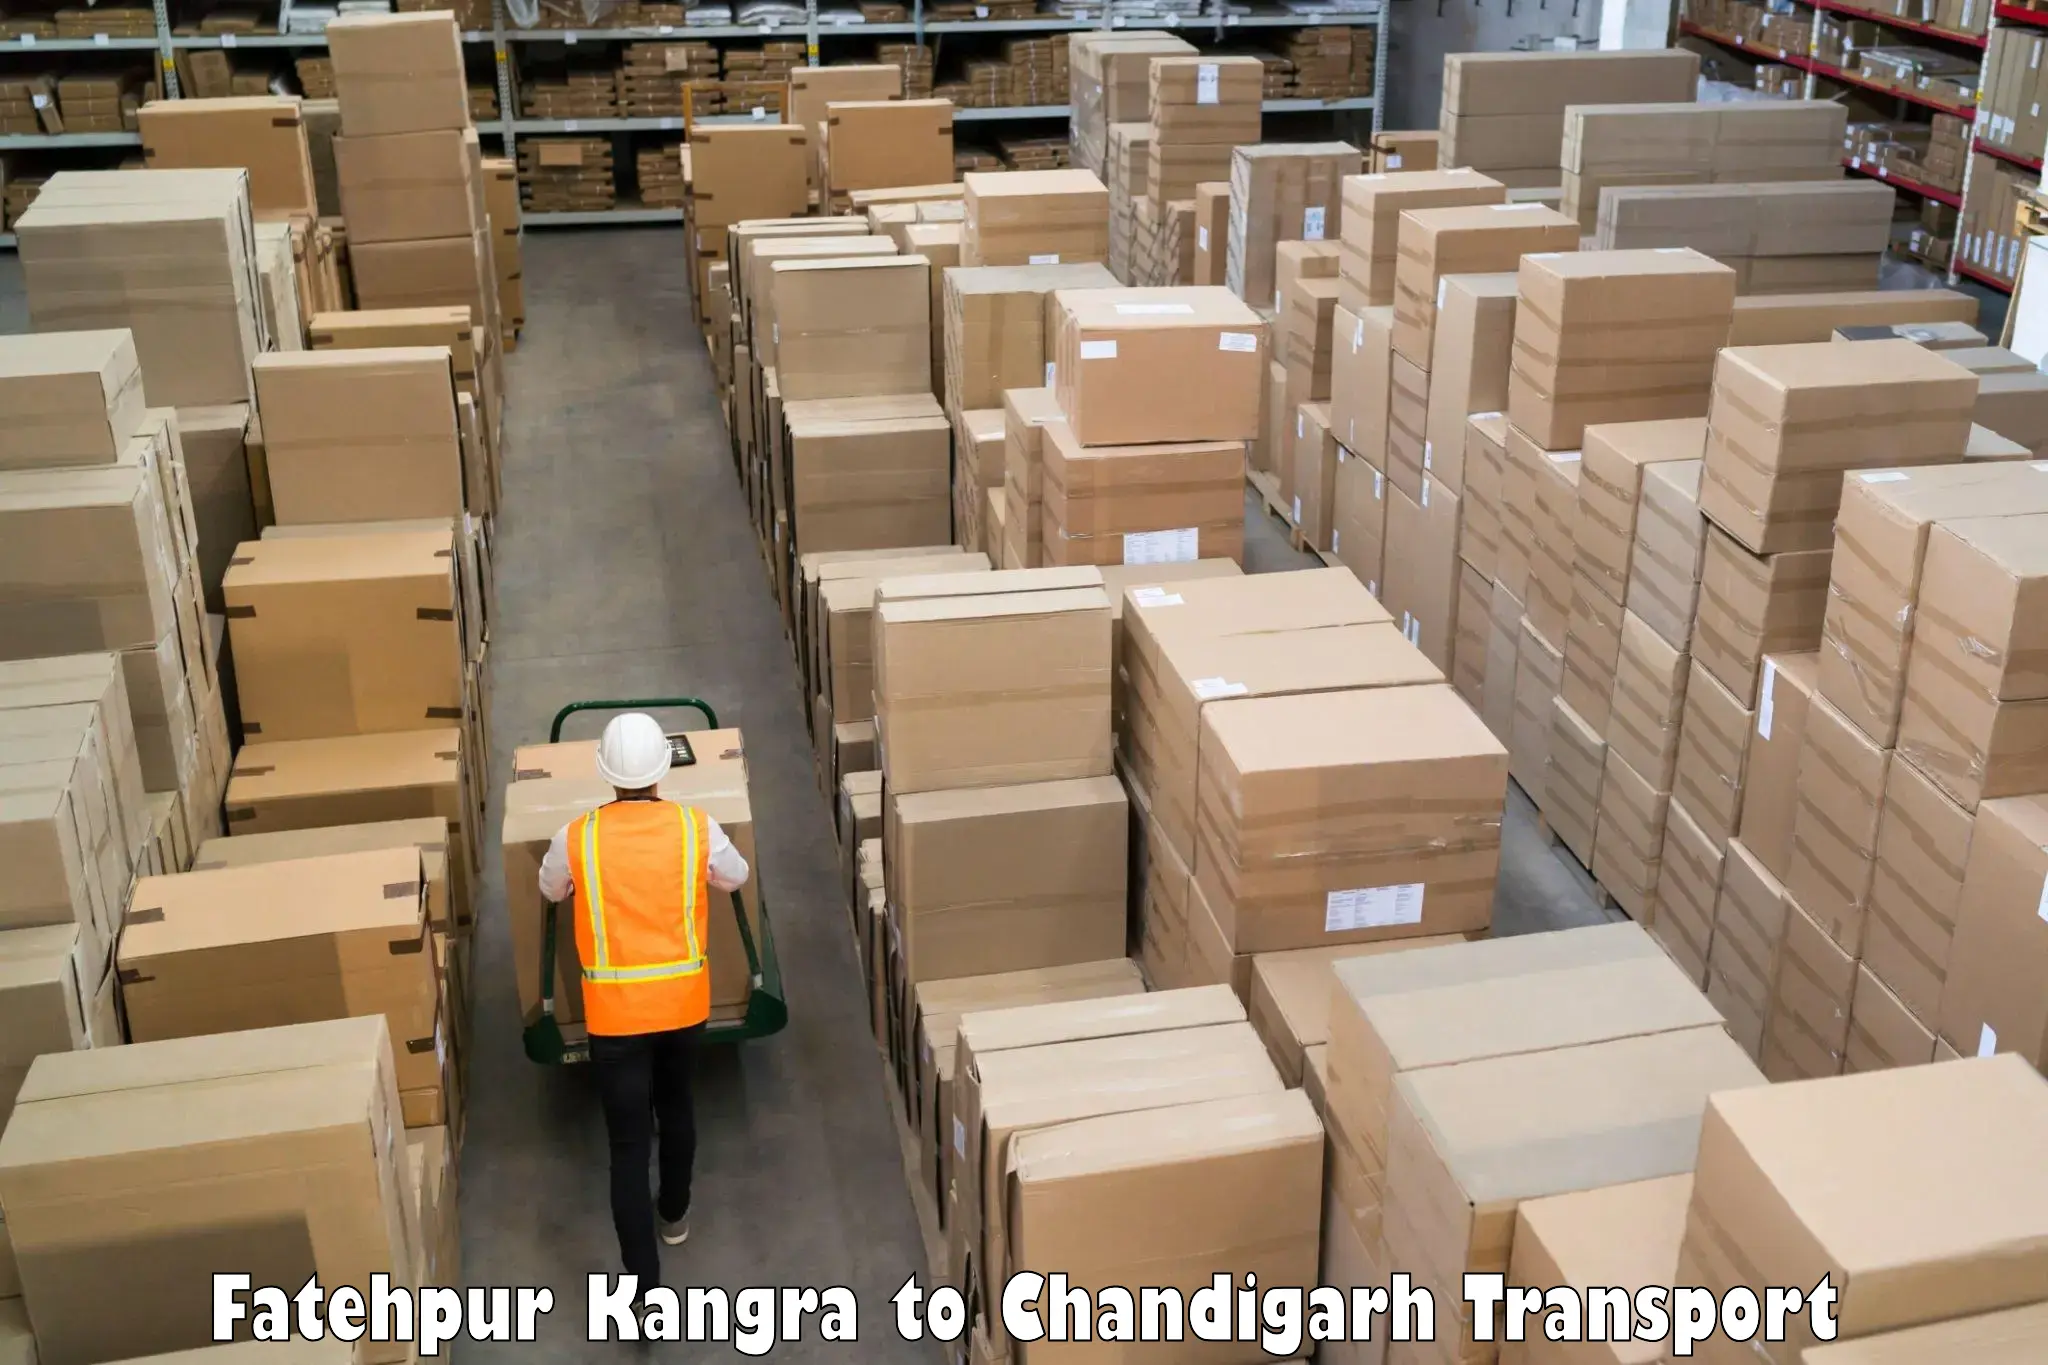 Shipping partner Fatehpur Kangra to Chandigarh